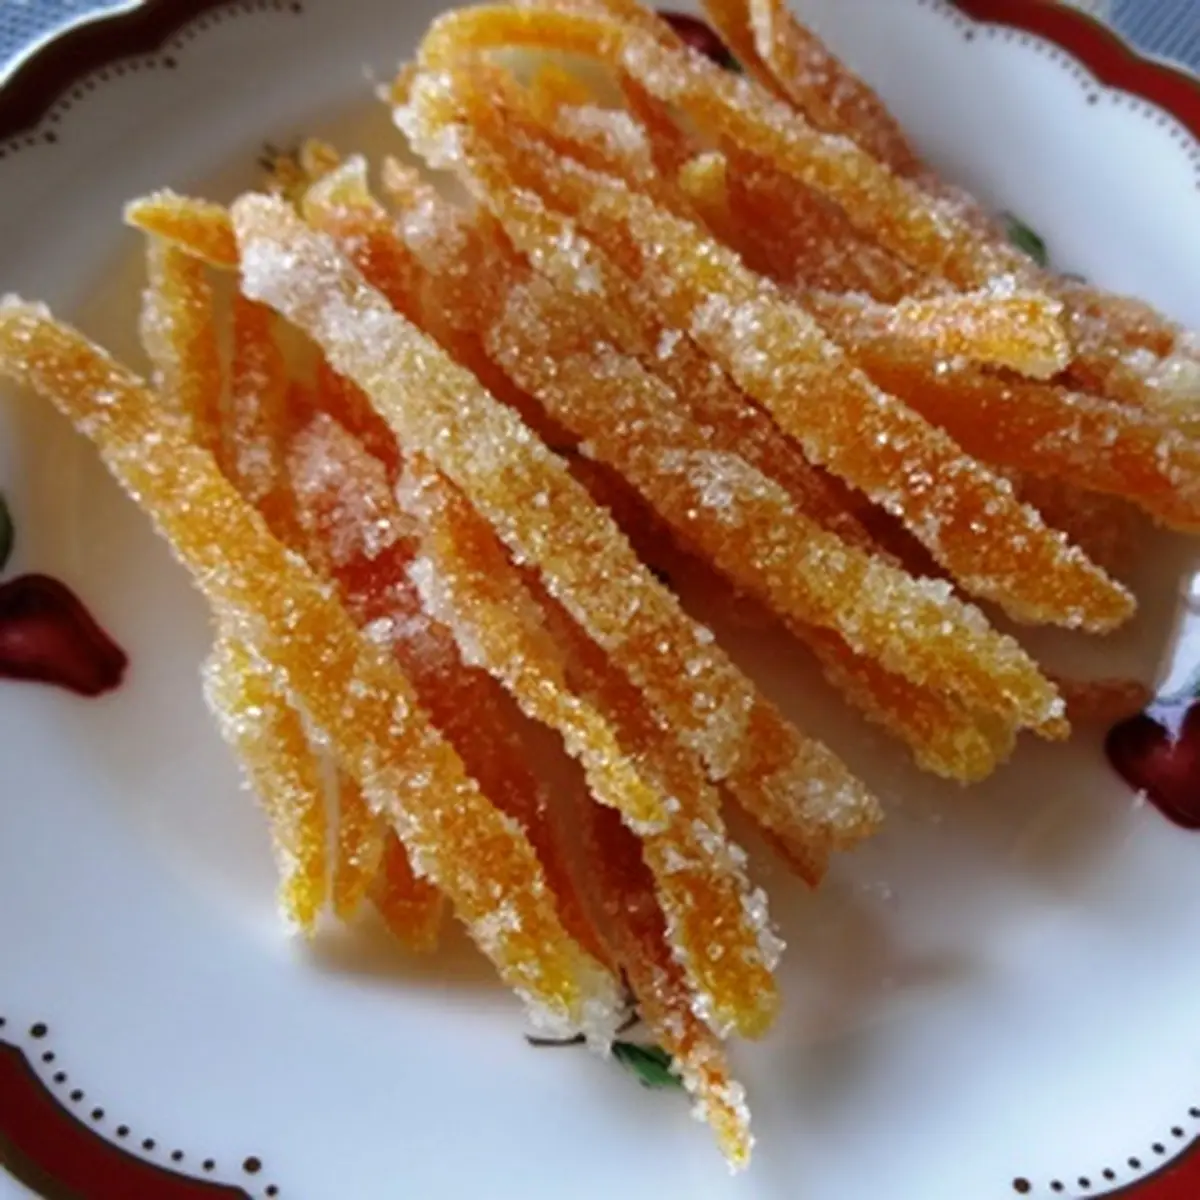 オレンジピールのレシピ 作り方 中村加奈子 料理教室検索サイト クスパ